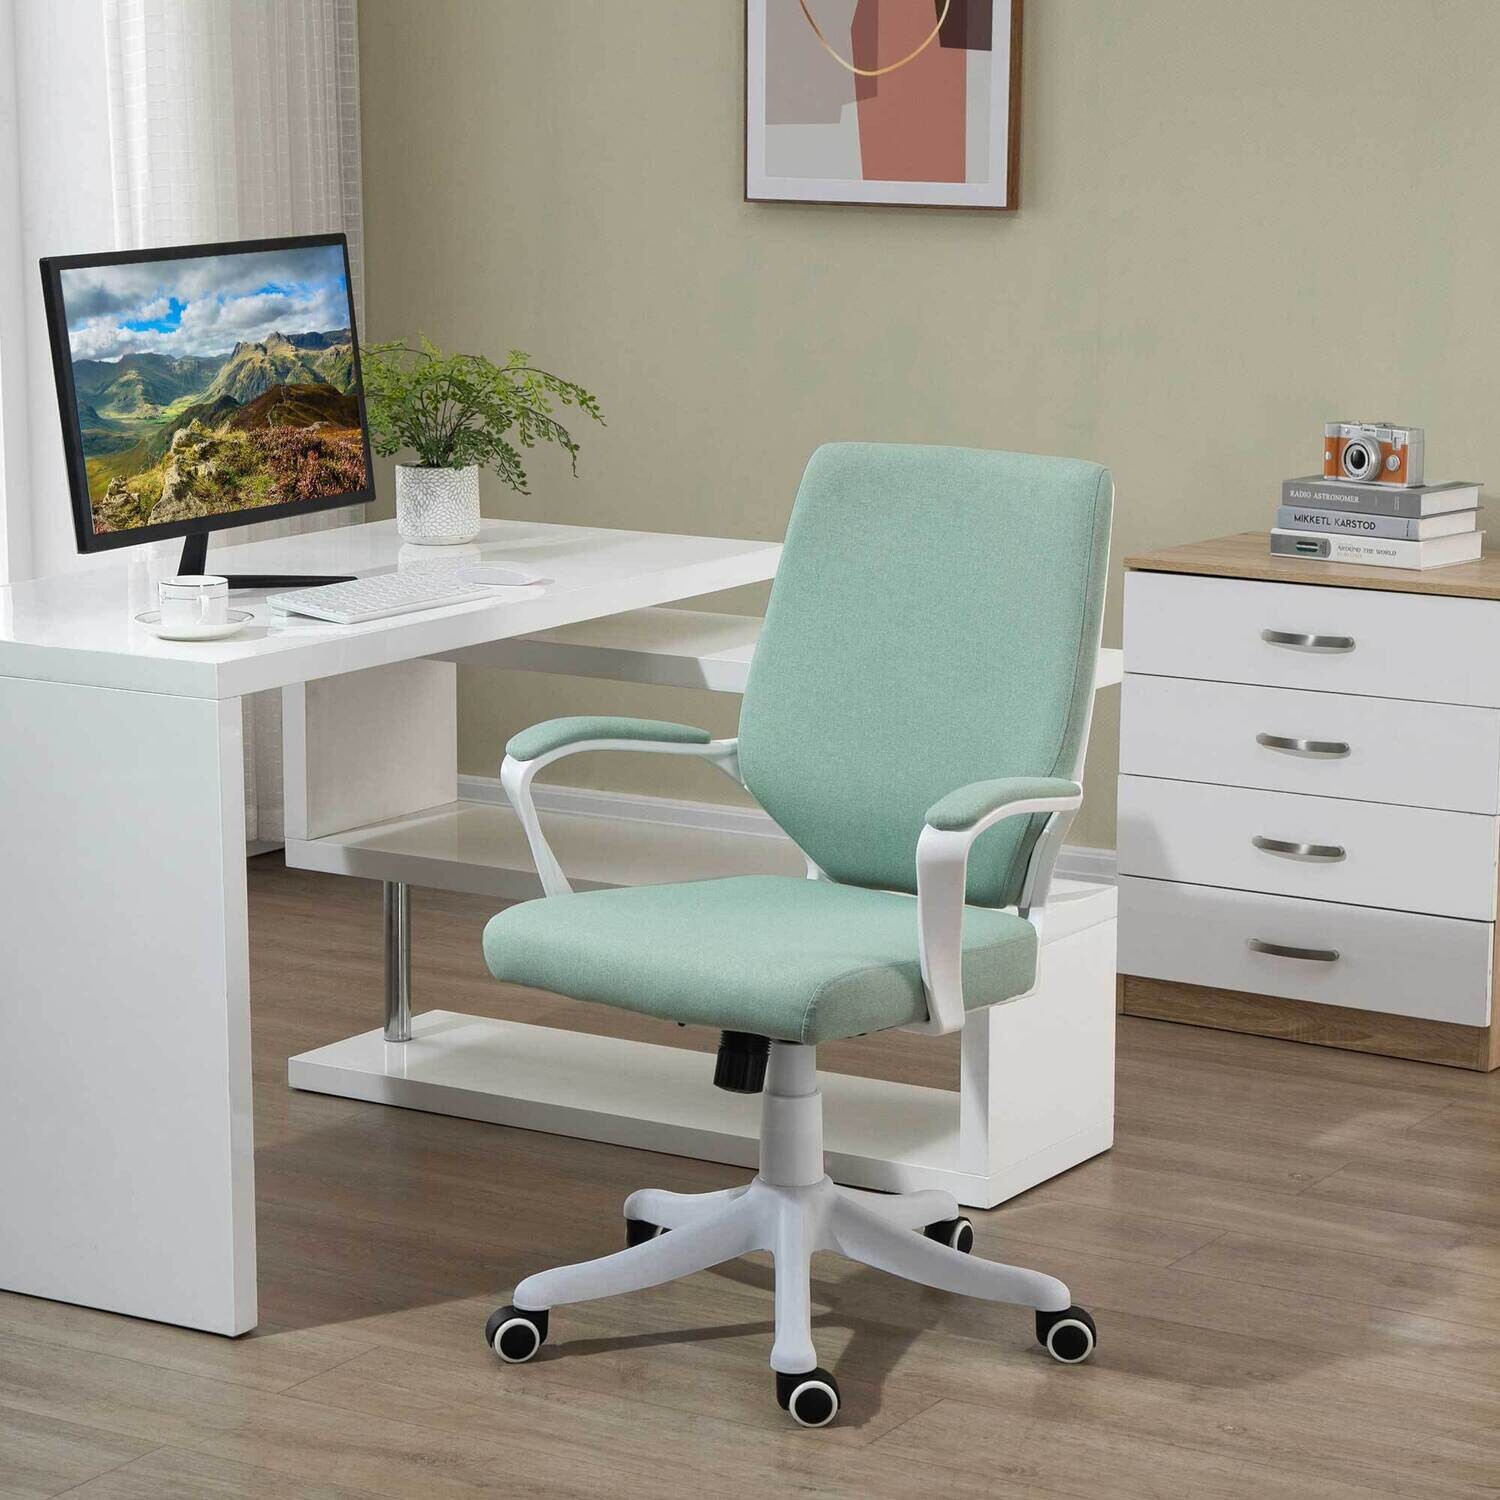 Vinsetto Bürostuhl ergonomischer Drehstuhl höhenverstellbar Grün+Weiss